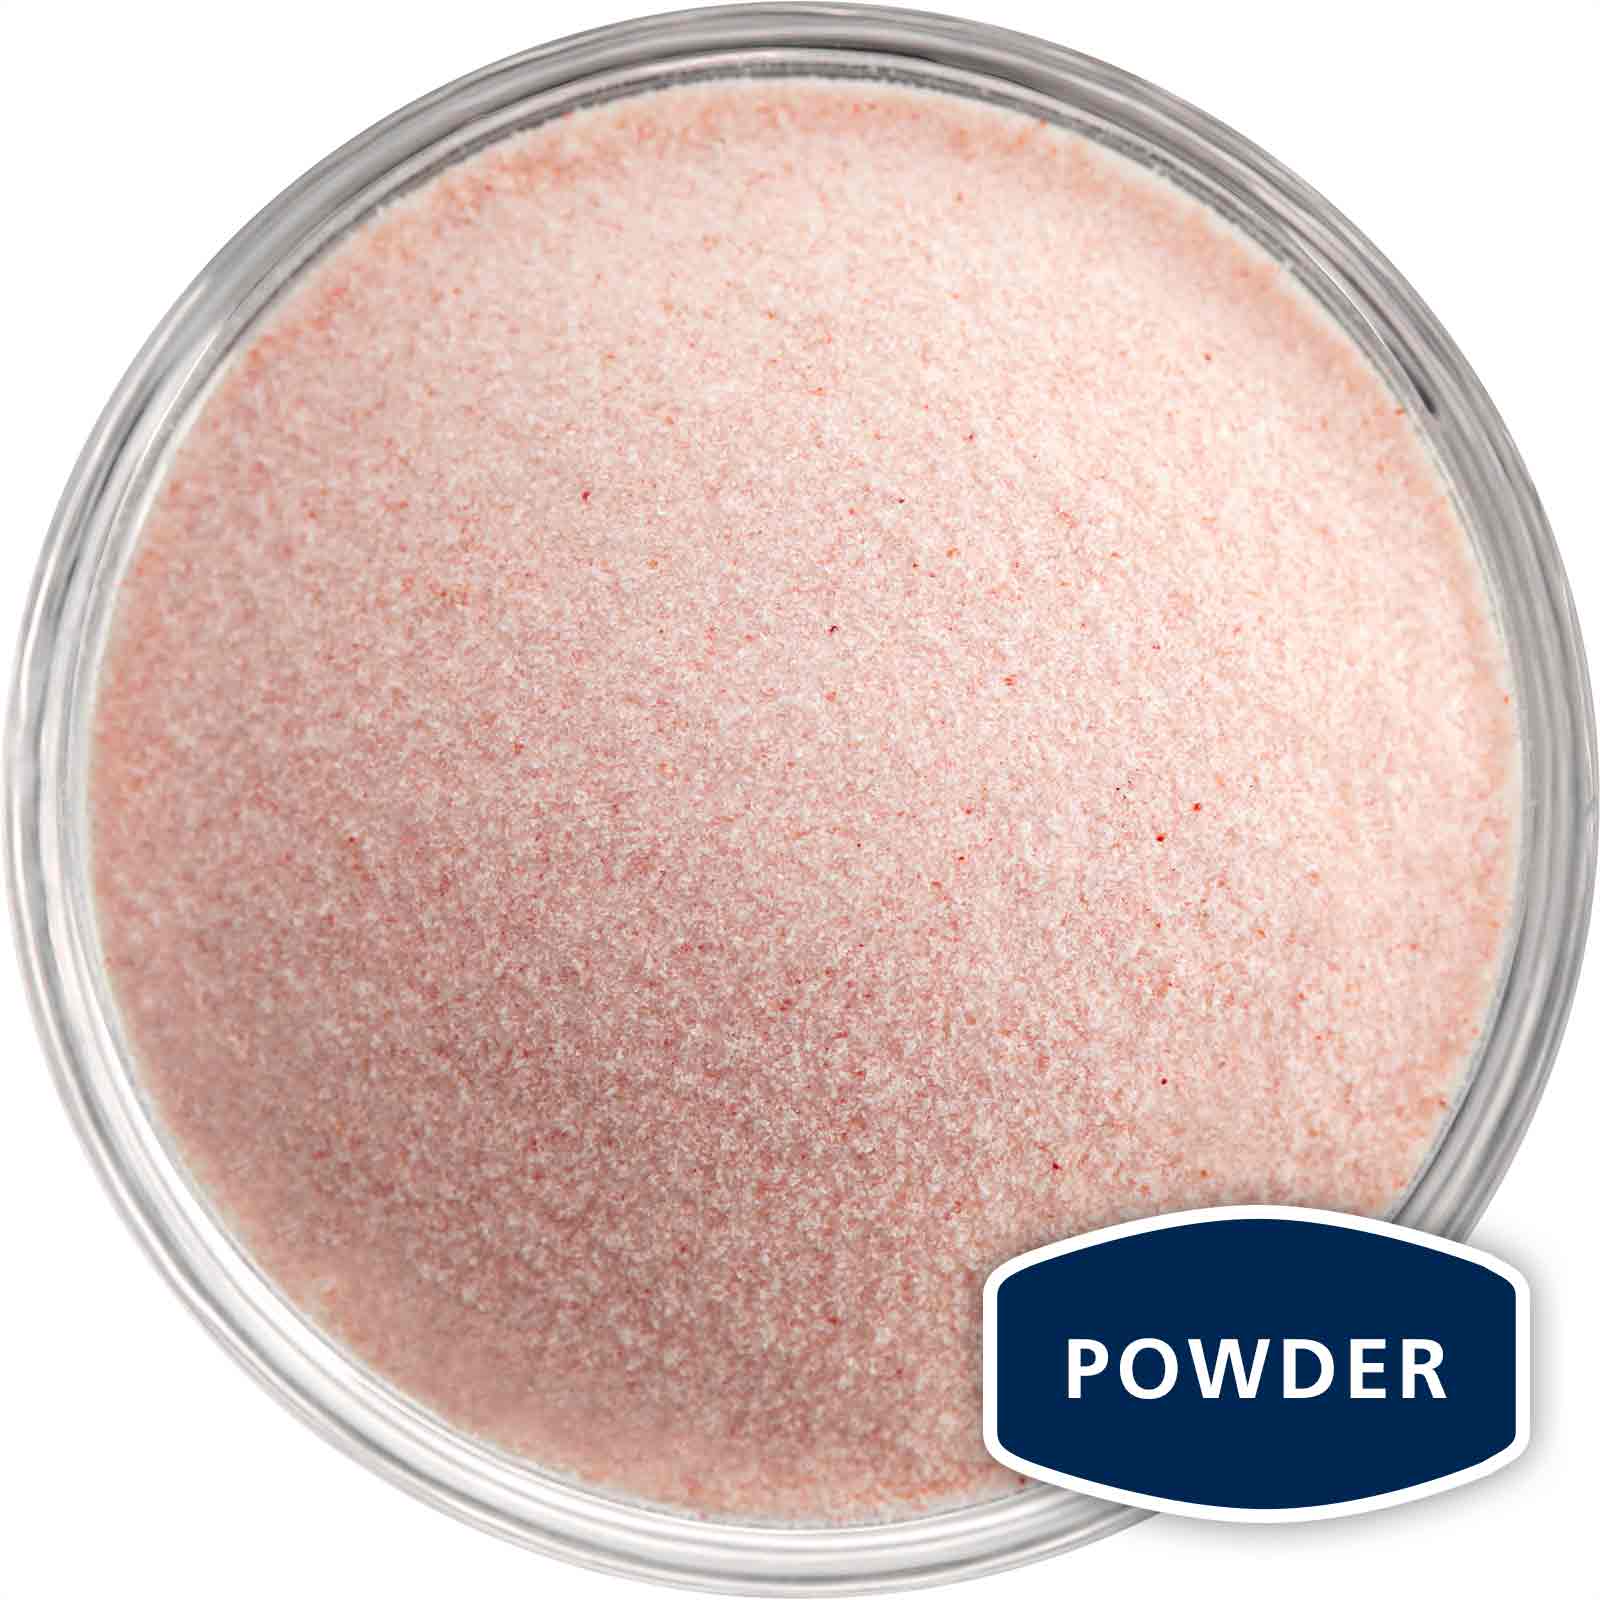 Bowl of Himalayan pink salt powder grain